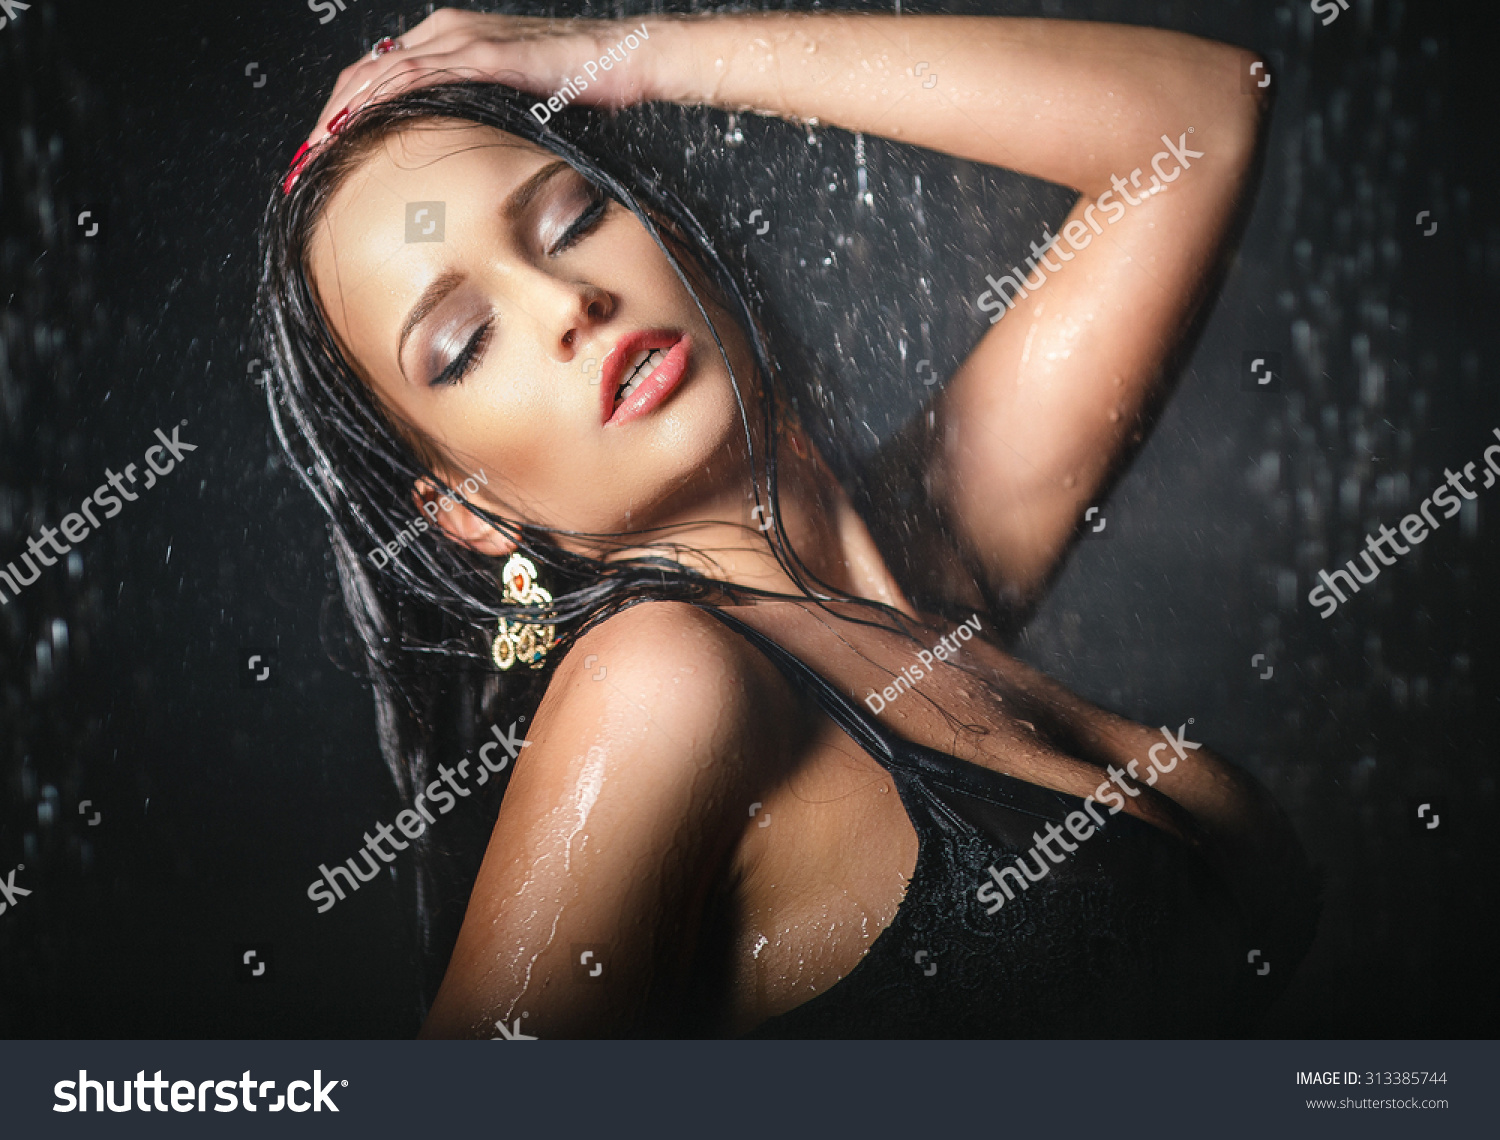 sexy girl under shower sex scene